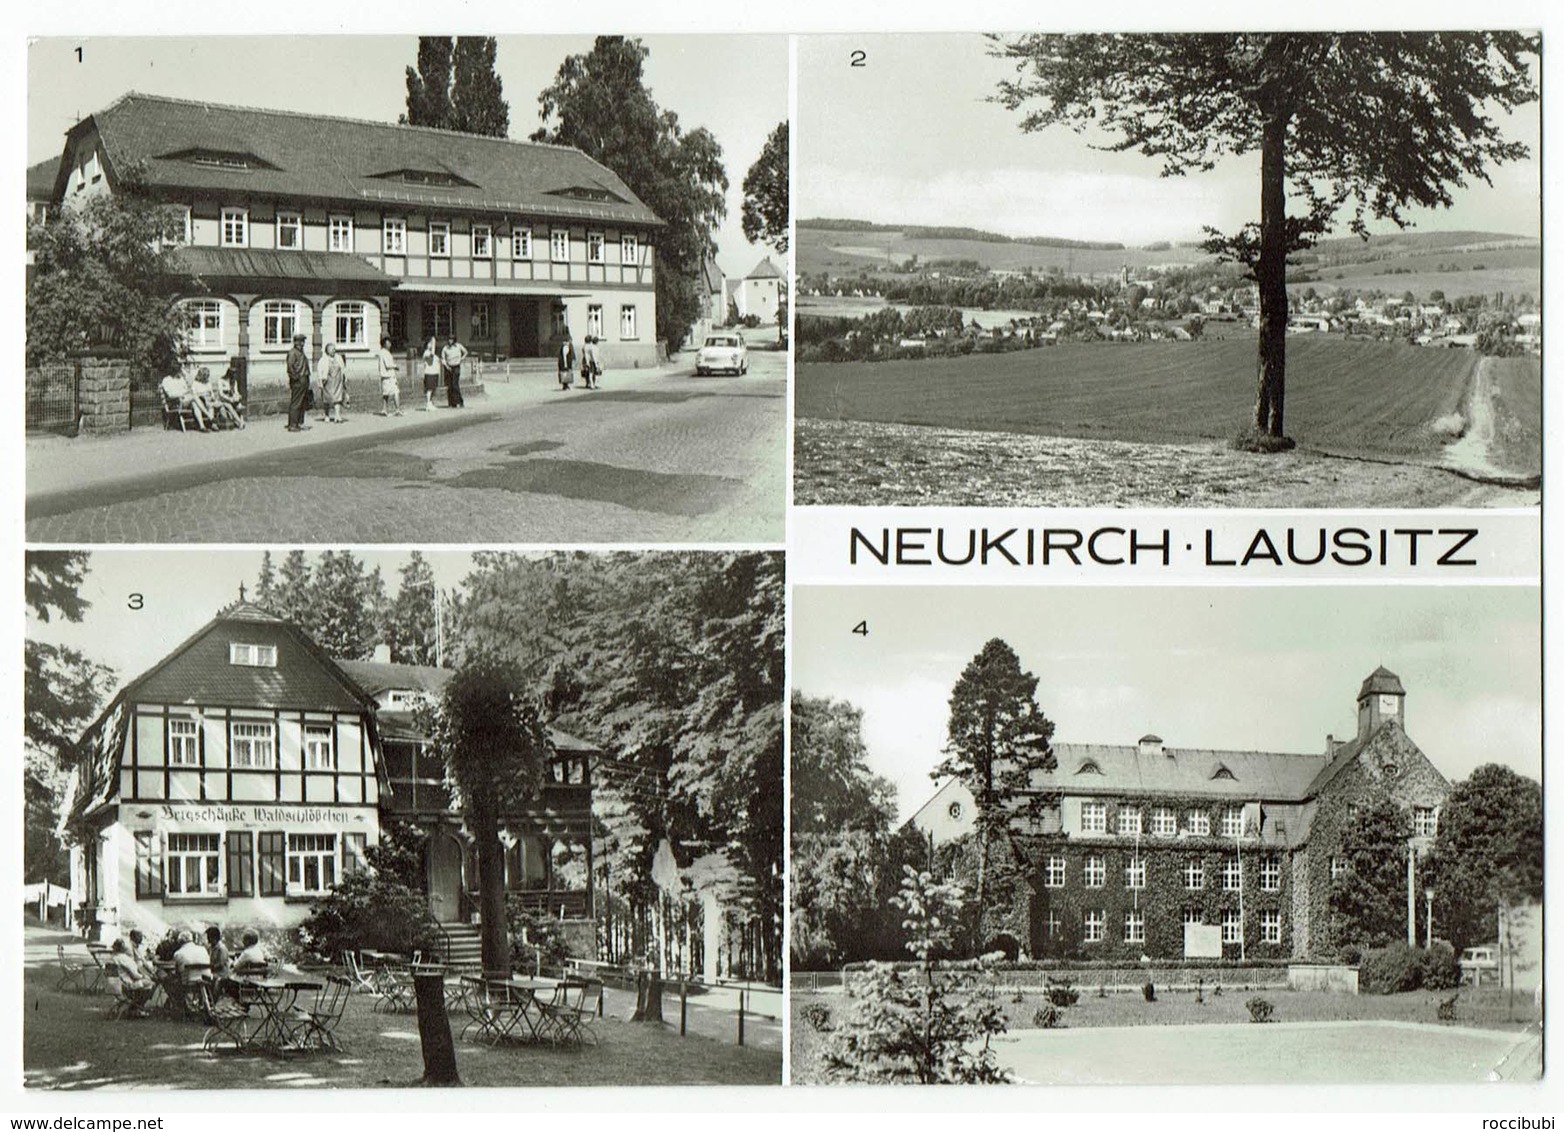 Neukirch, Lausitz - Neukirch (Lausitz)